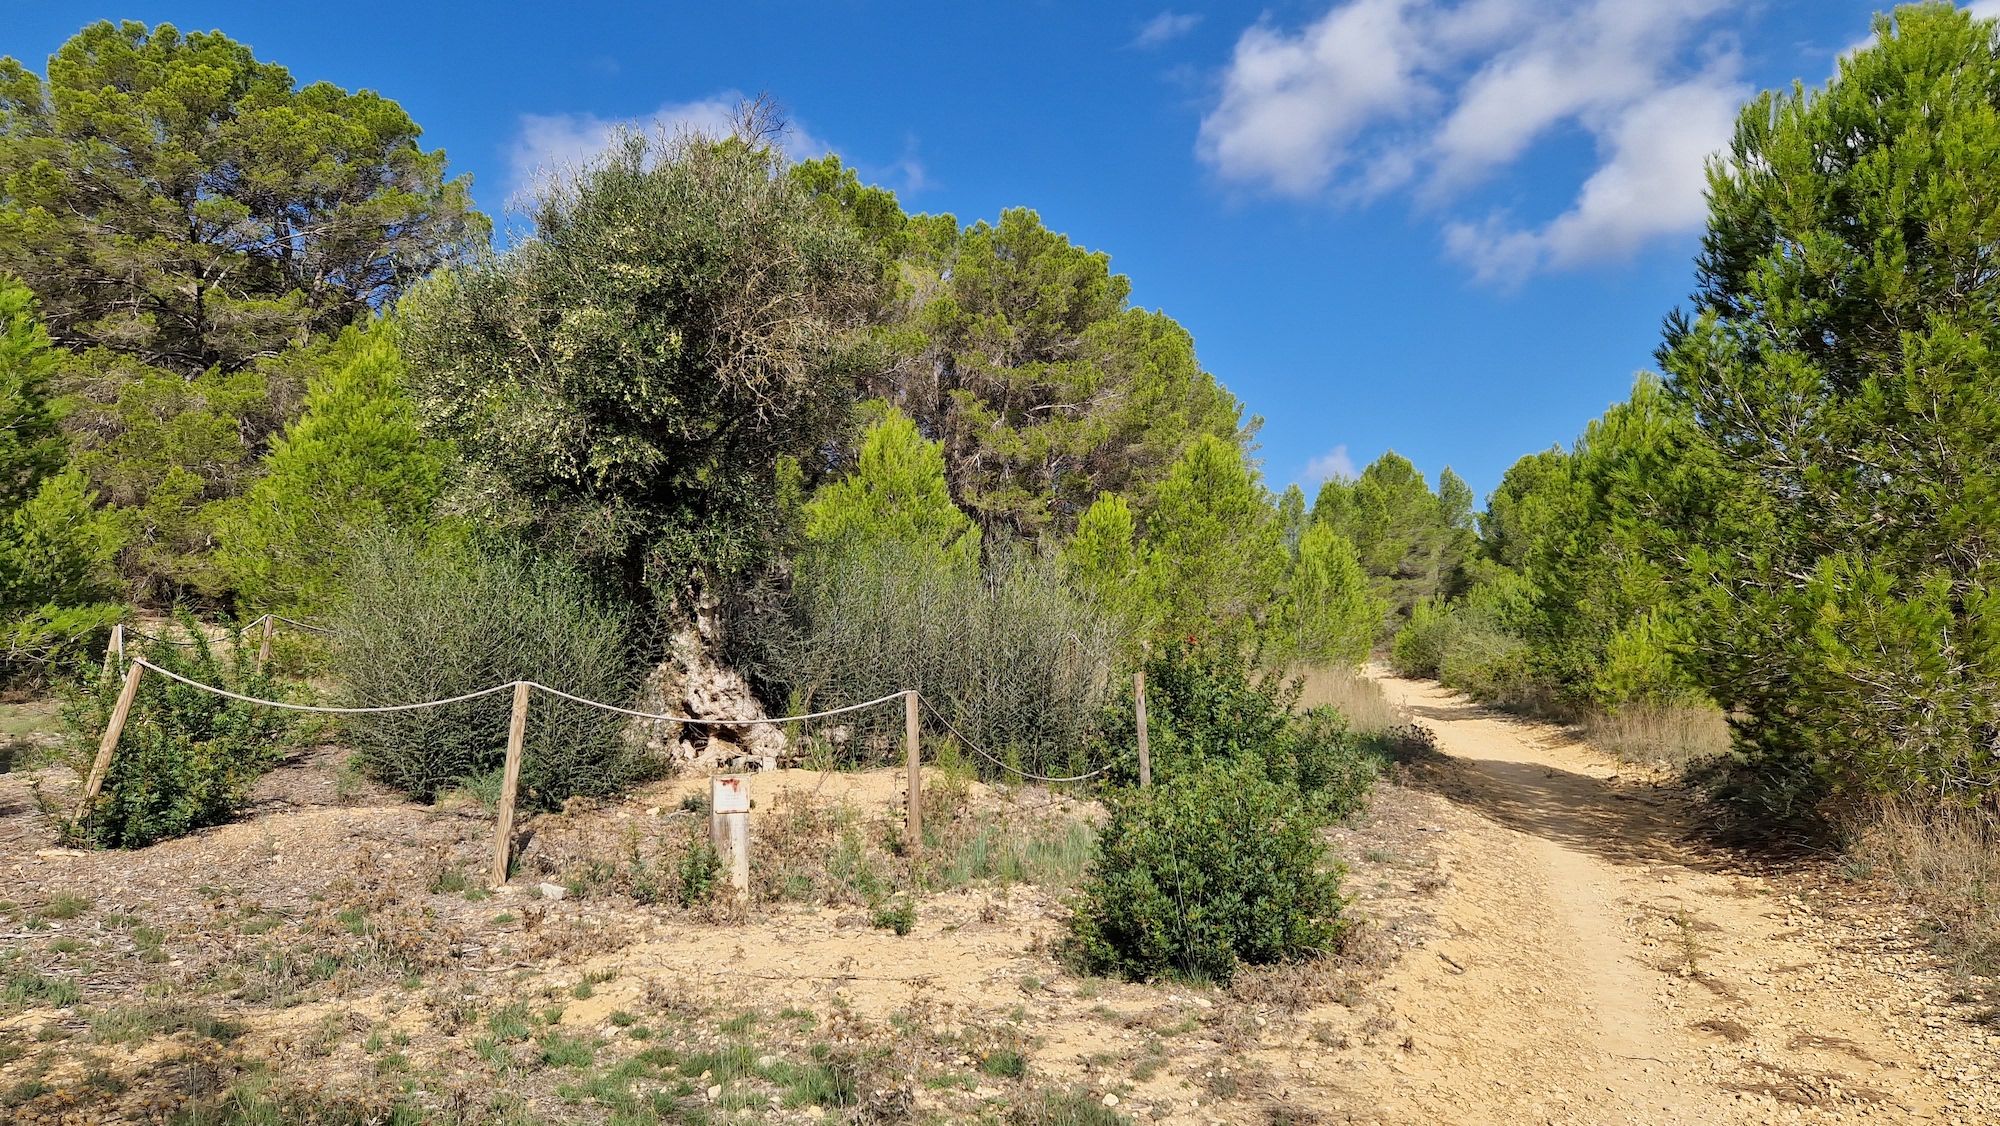 oliveras protegidas y catalogadas como árbol singular